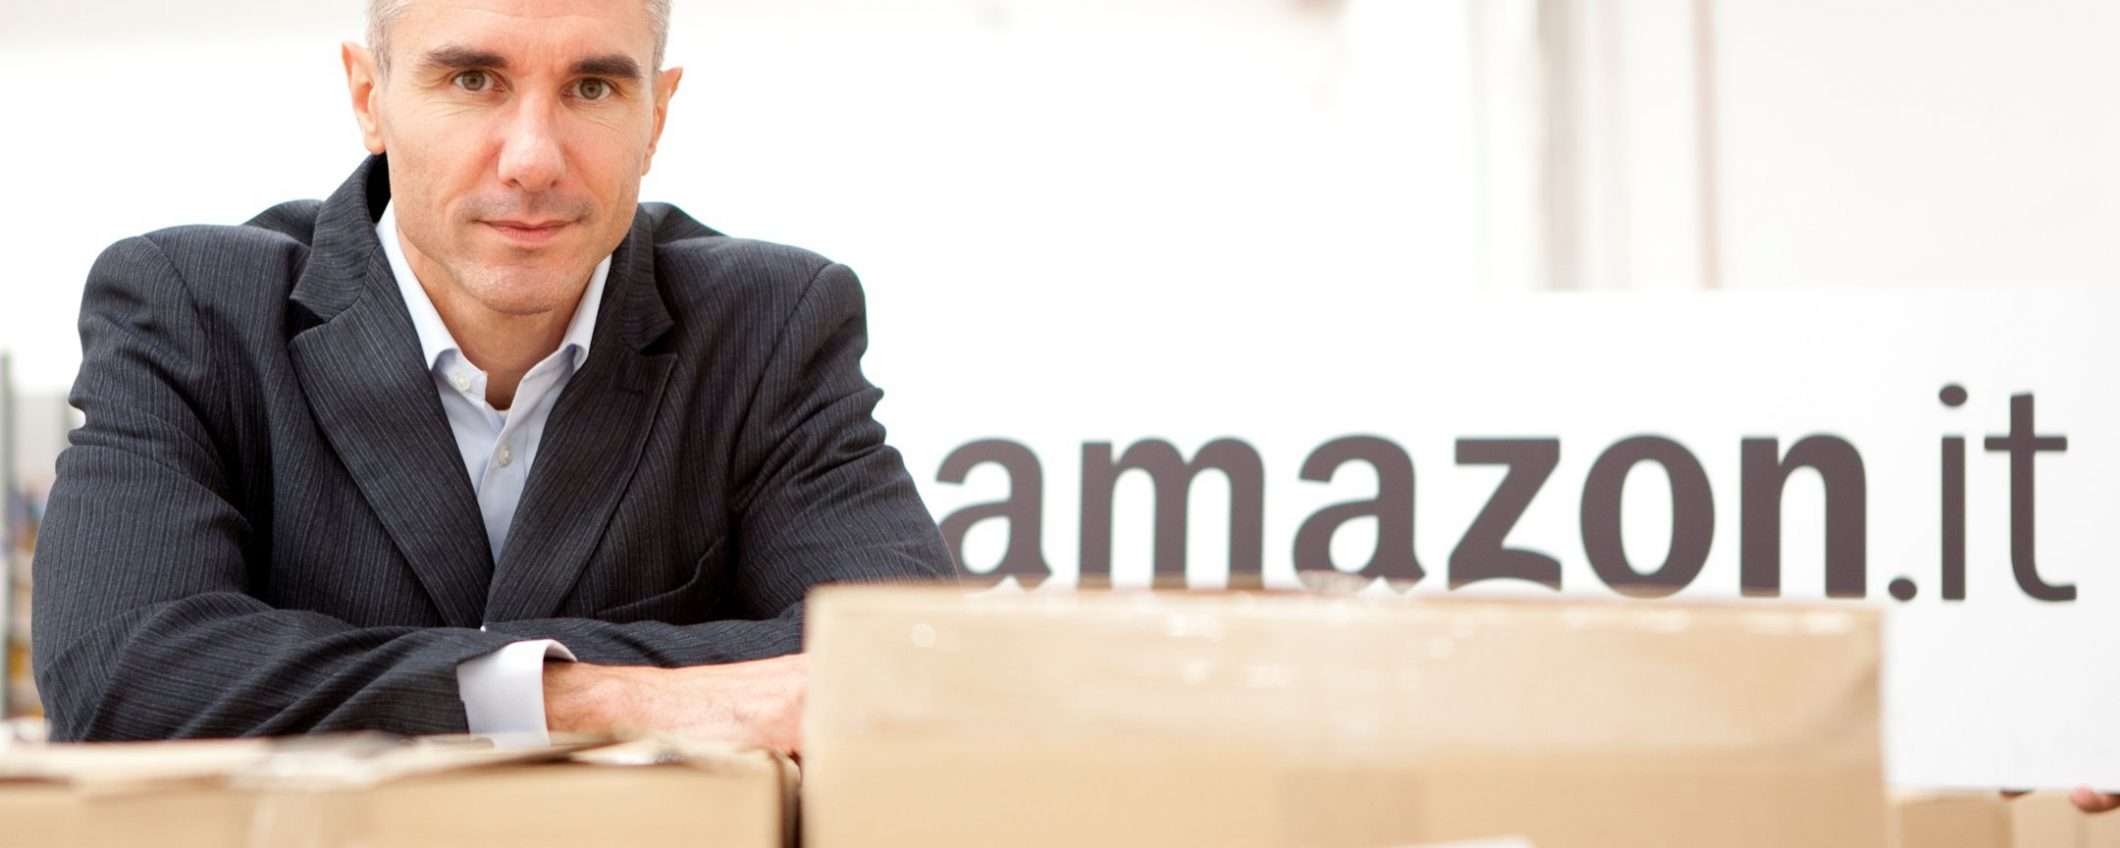 Amazon, 75 mila nuove assunzioni in arrivo